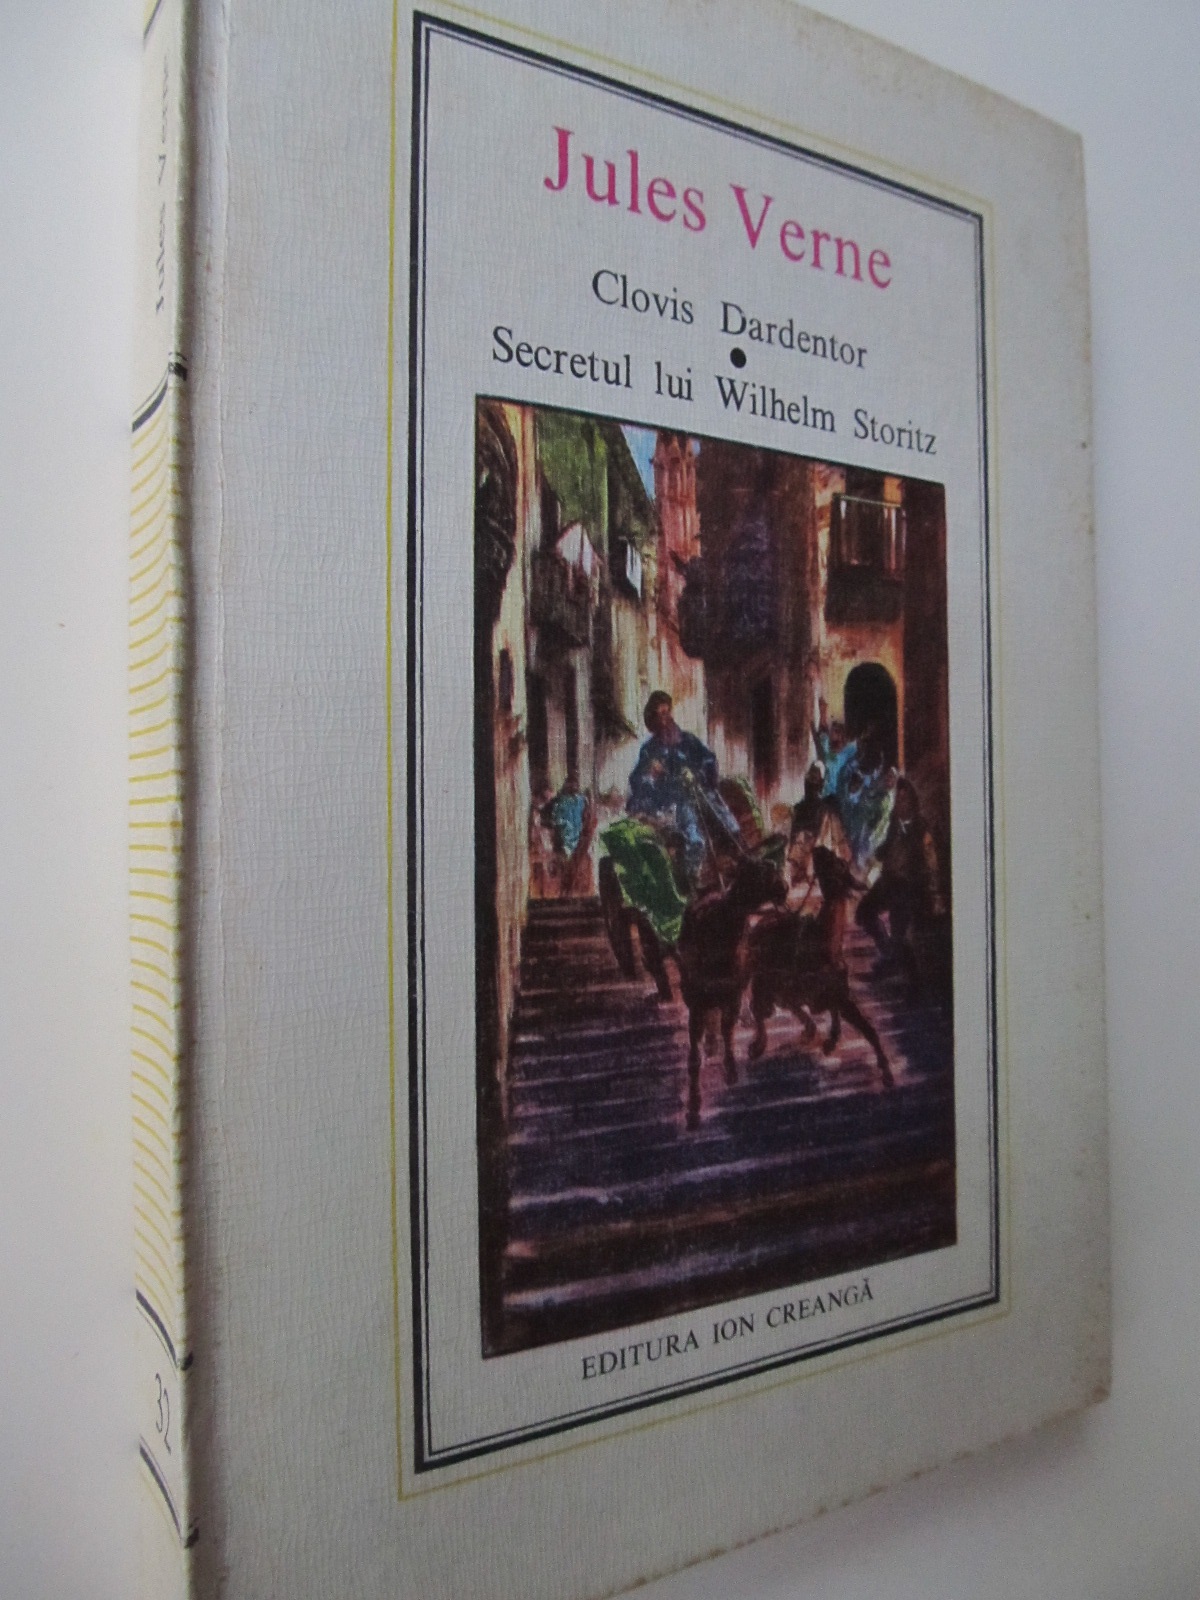 Clovis Dardentor - Secretul lui Wilhelm Storitz (32) - Jules Verne | Detalii carte